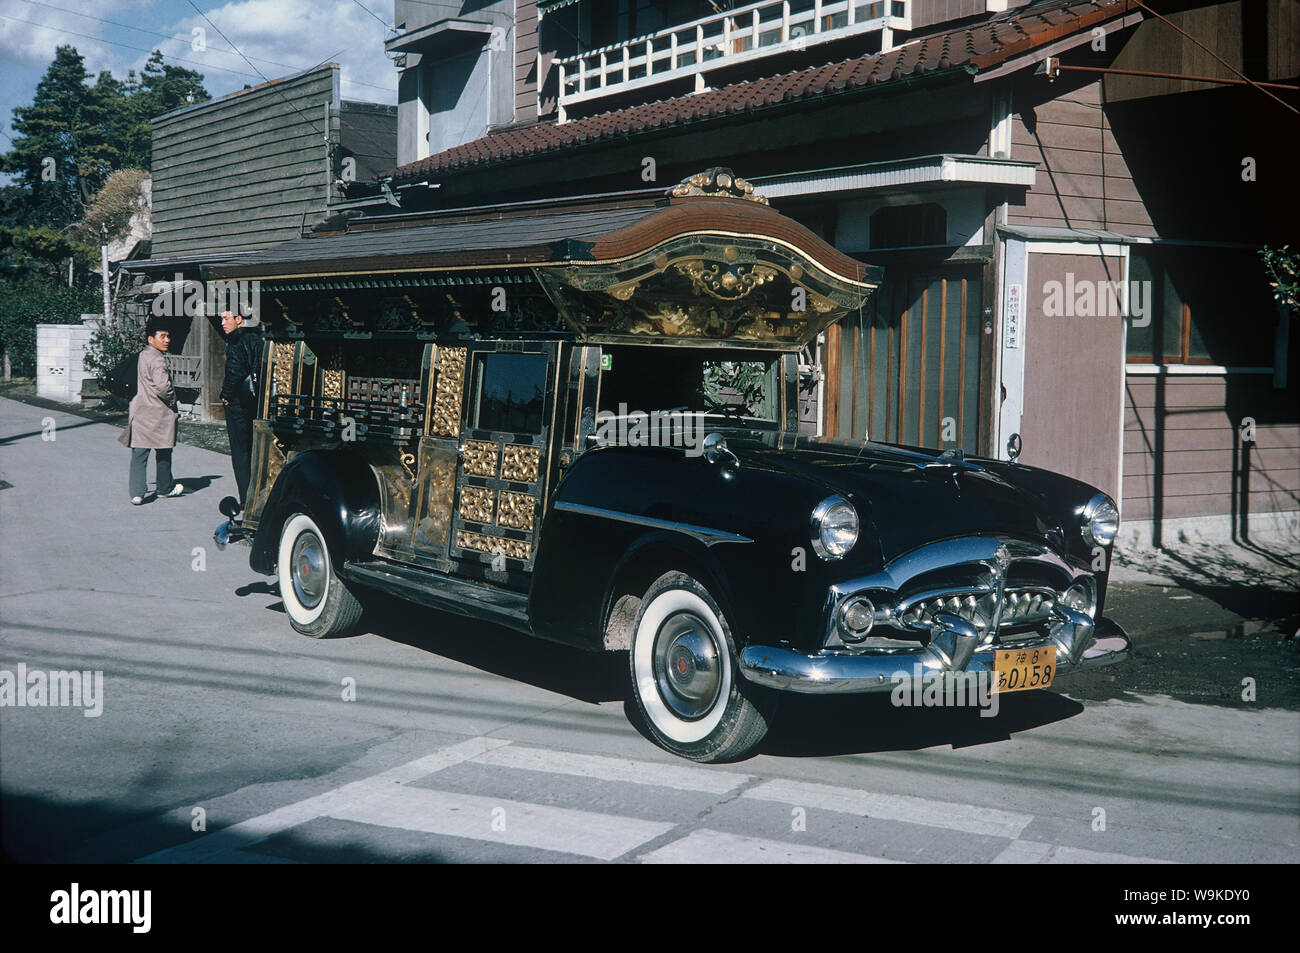 [ 1960 - Japon ] corbillard Japonais - Cadillac transformé en corbillard japonais richement décorées, 1964 (Showa 39). 20e siècle vintage film dia. Banque D'Images